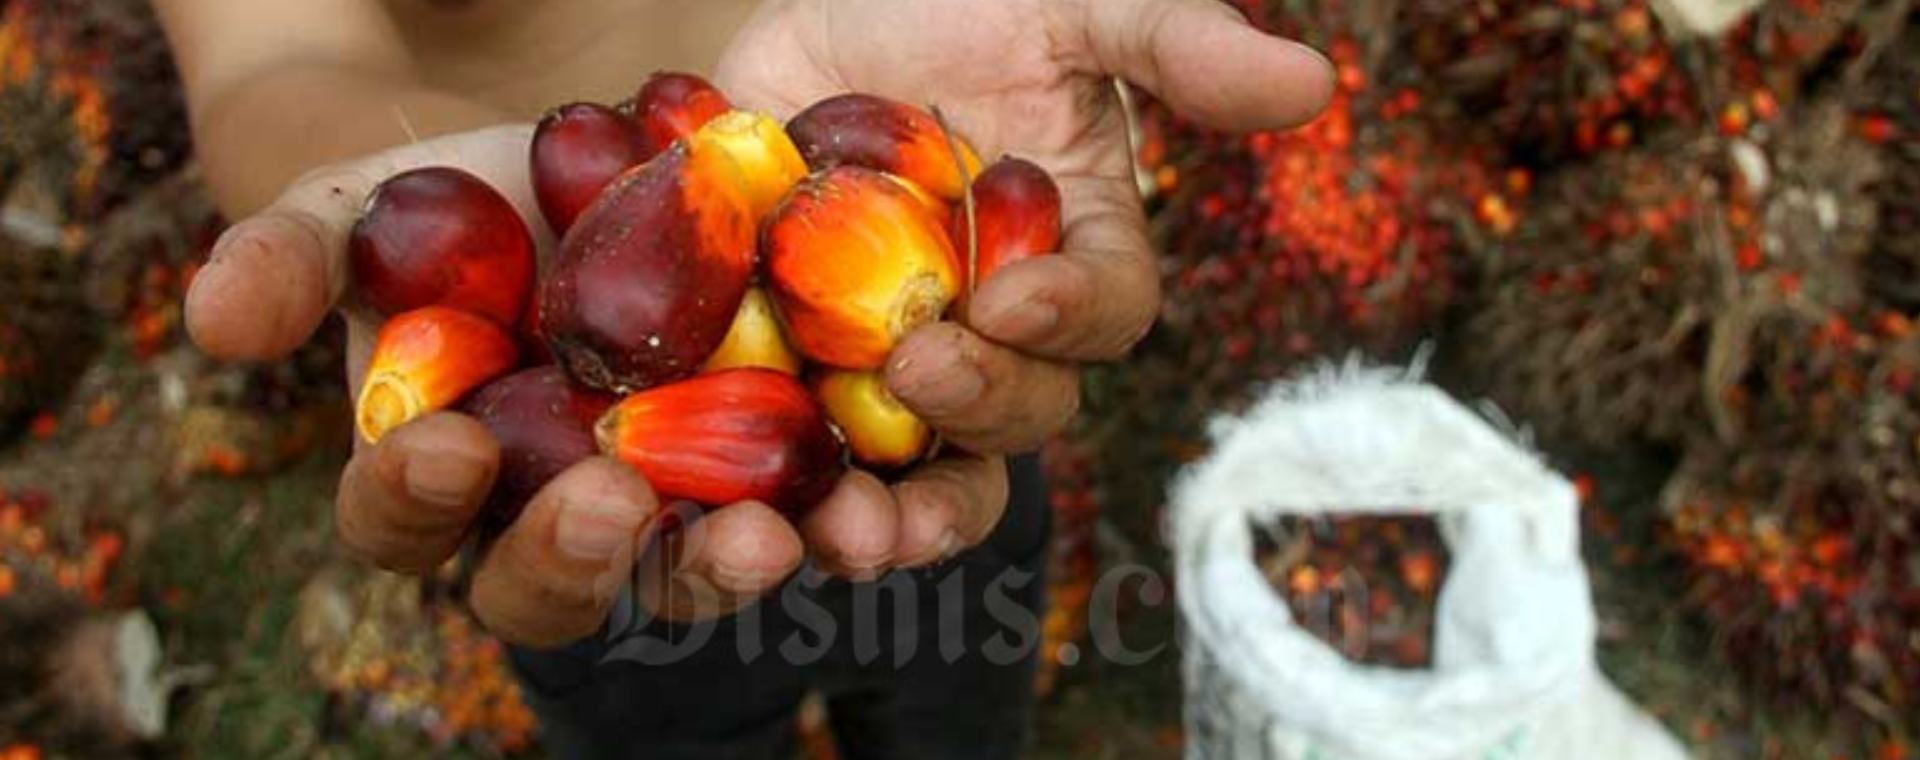 Pekerja menata kelapa sawit saat panen di kawasan Kemang, Kabupaten Bogor, Minggu (30/8/2020). Badan Litbang Kementerian ESDM memulai kajian kelayakan pemanfaatan minyak nabati murni (crude palm oil - CPO) untuk pembangkit listrik tenaga diesel (PLTD) hingga Desember 2020. Bisnis / Arief Hermawan P